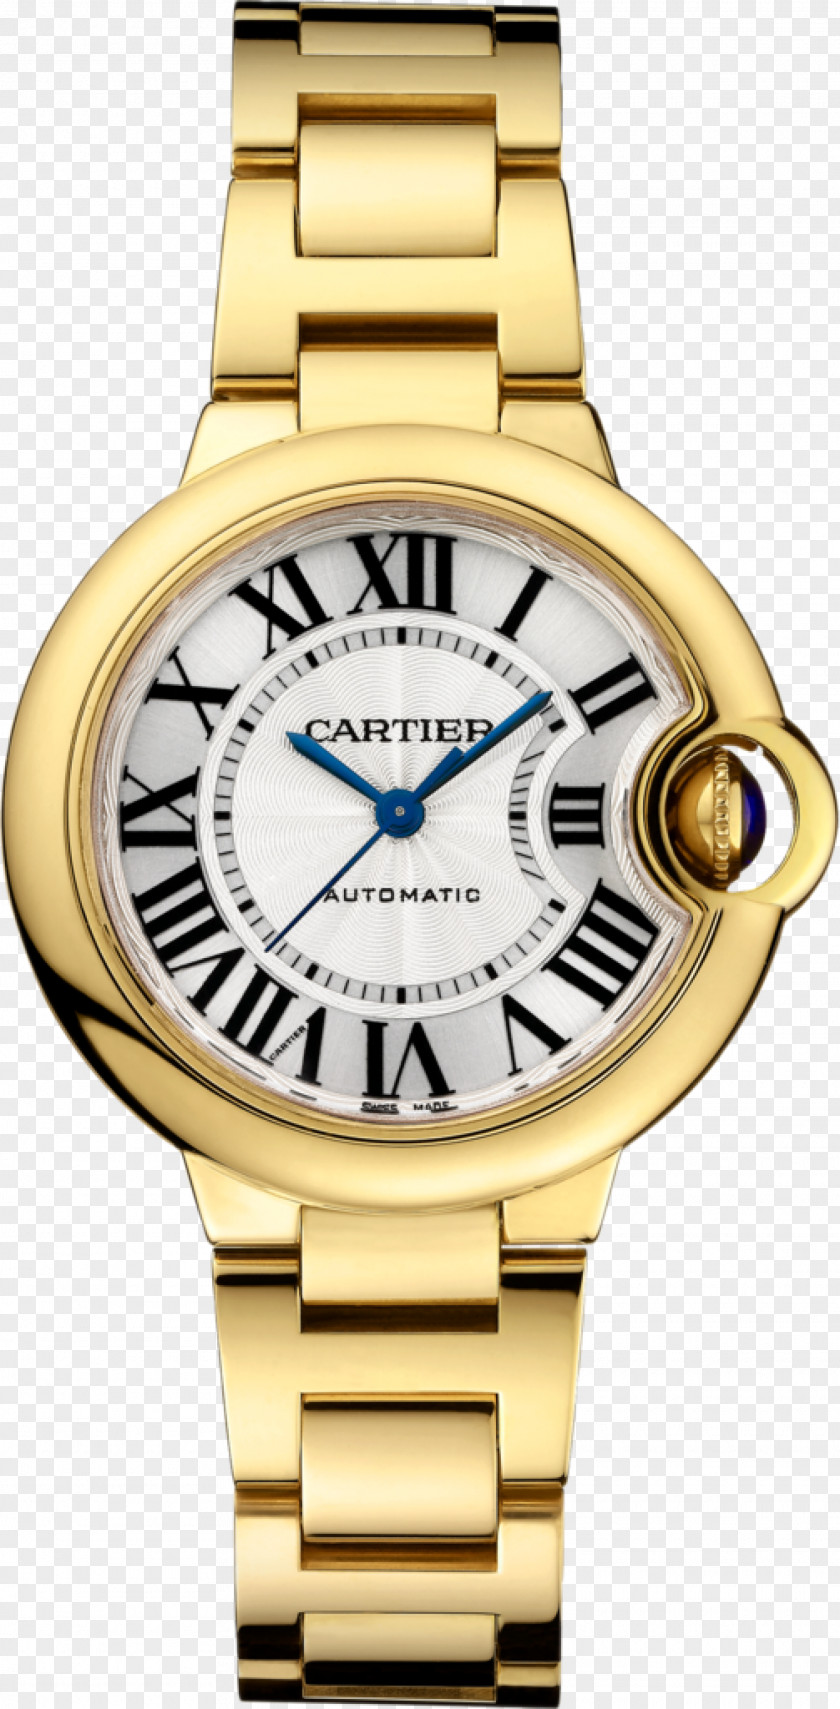 Watch Cartier Ballon Bleu Automatic Gold PNG